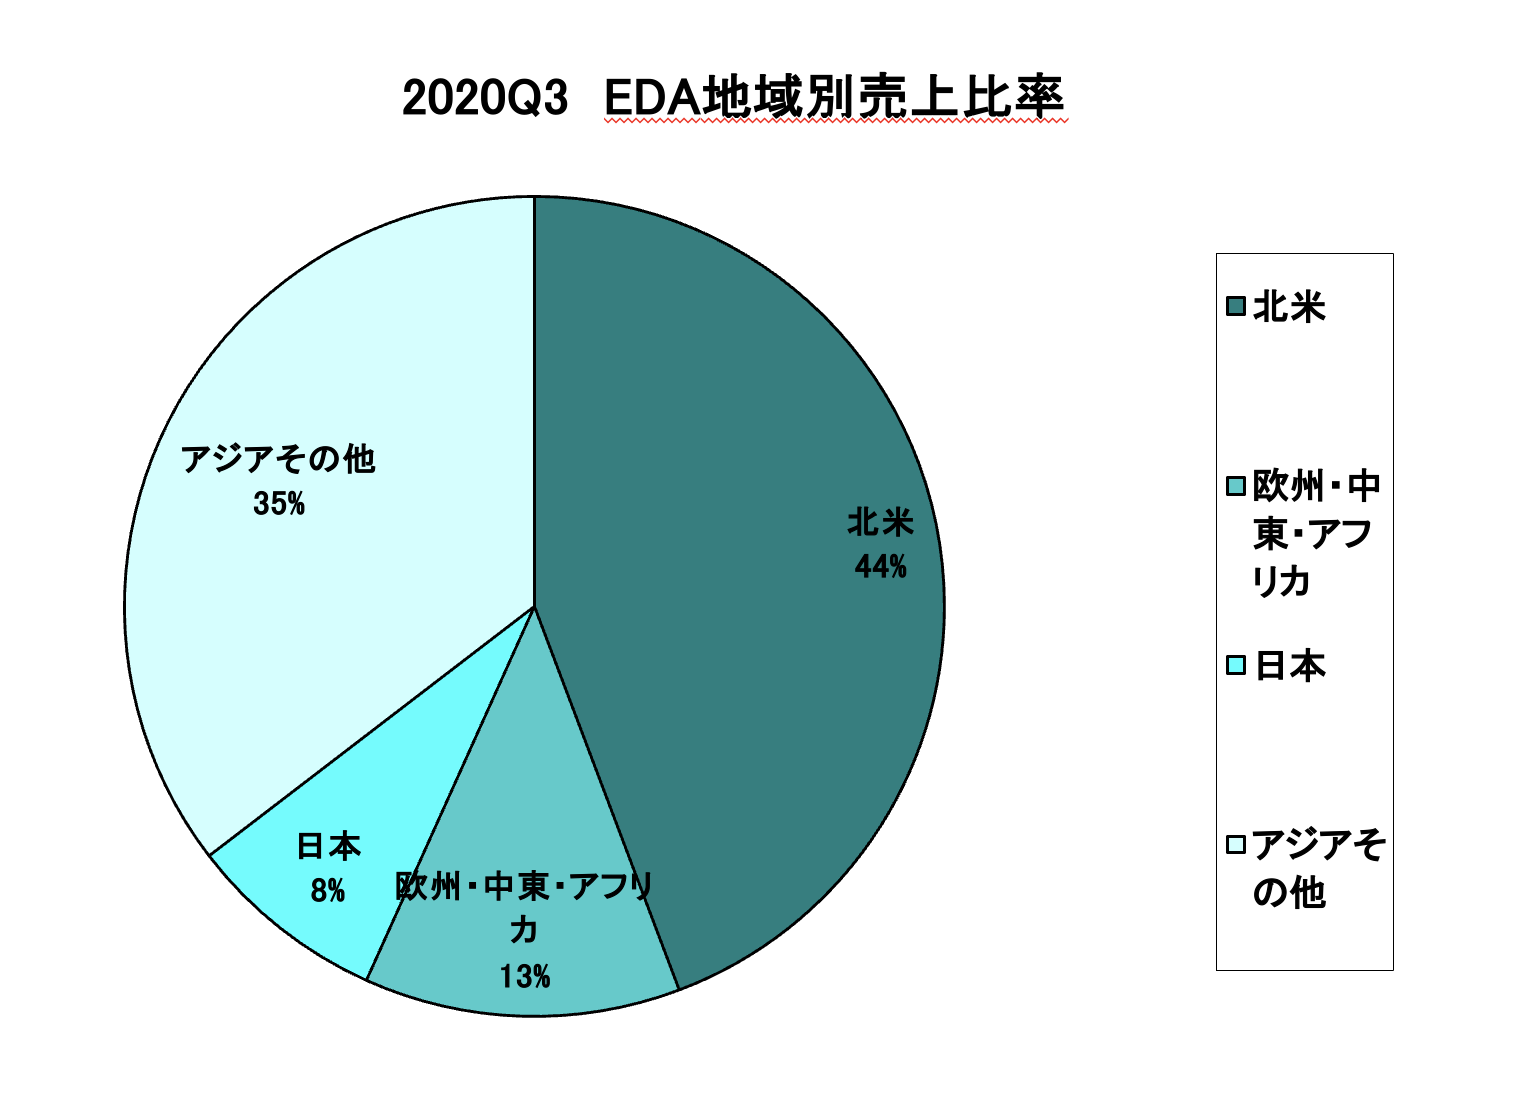 https://www.eda-express.com/%E3%82%B9%E3%82%AF%E3%83%AA%E3%83%BC%E3%83%B3%E3%82%B7%E3%83%A7%E3%83%83%E3%83%88%202021-04-14%208.12.12.png